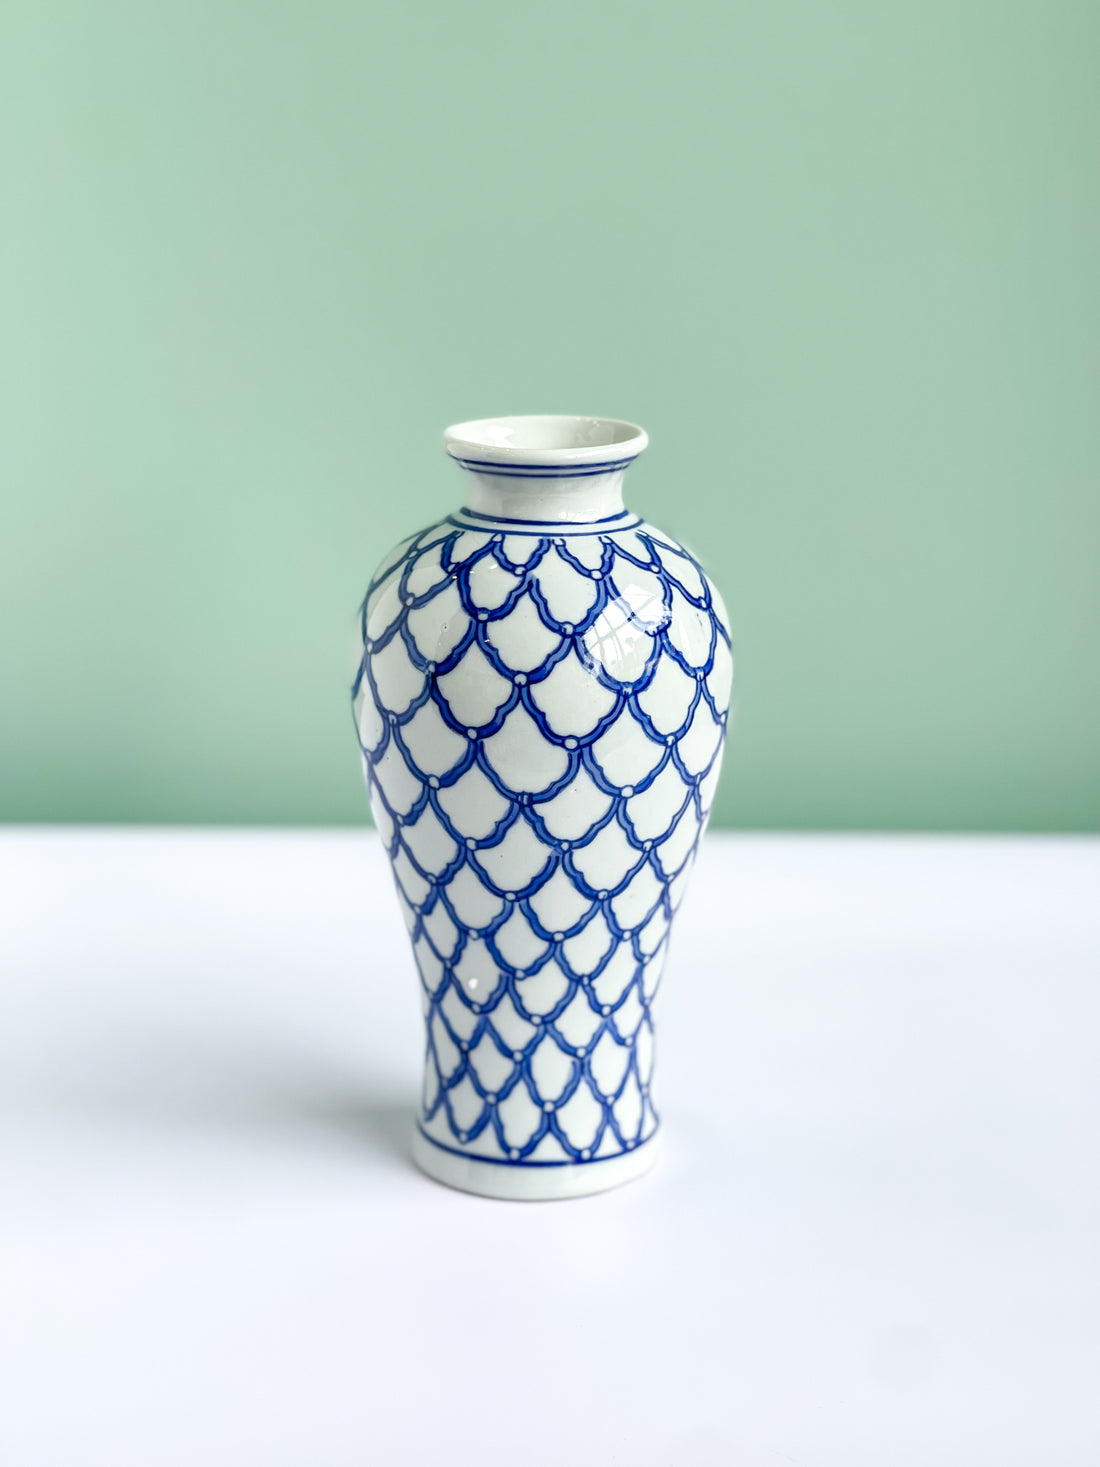 Blue And White Barclay Lattice Vase